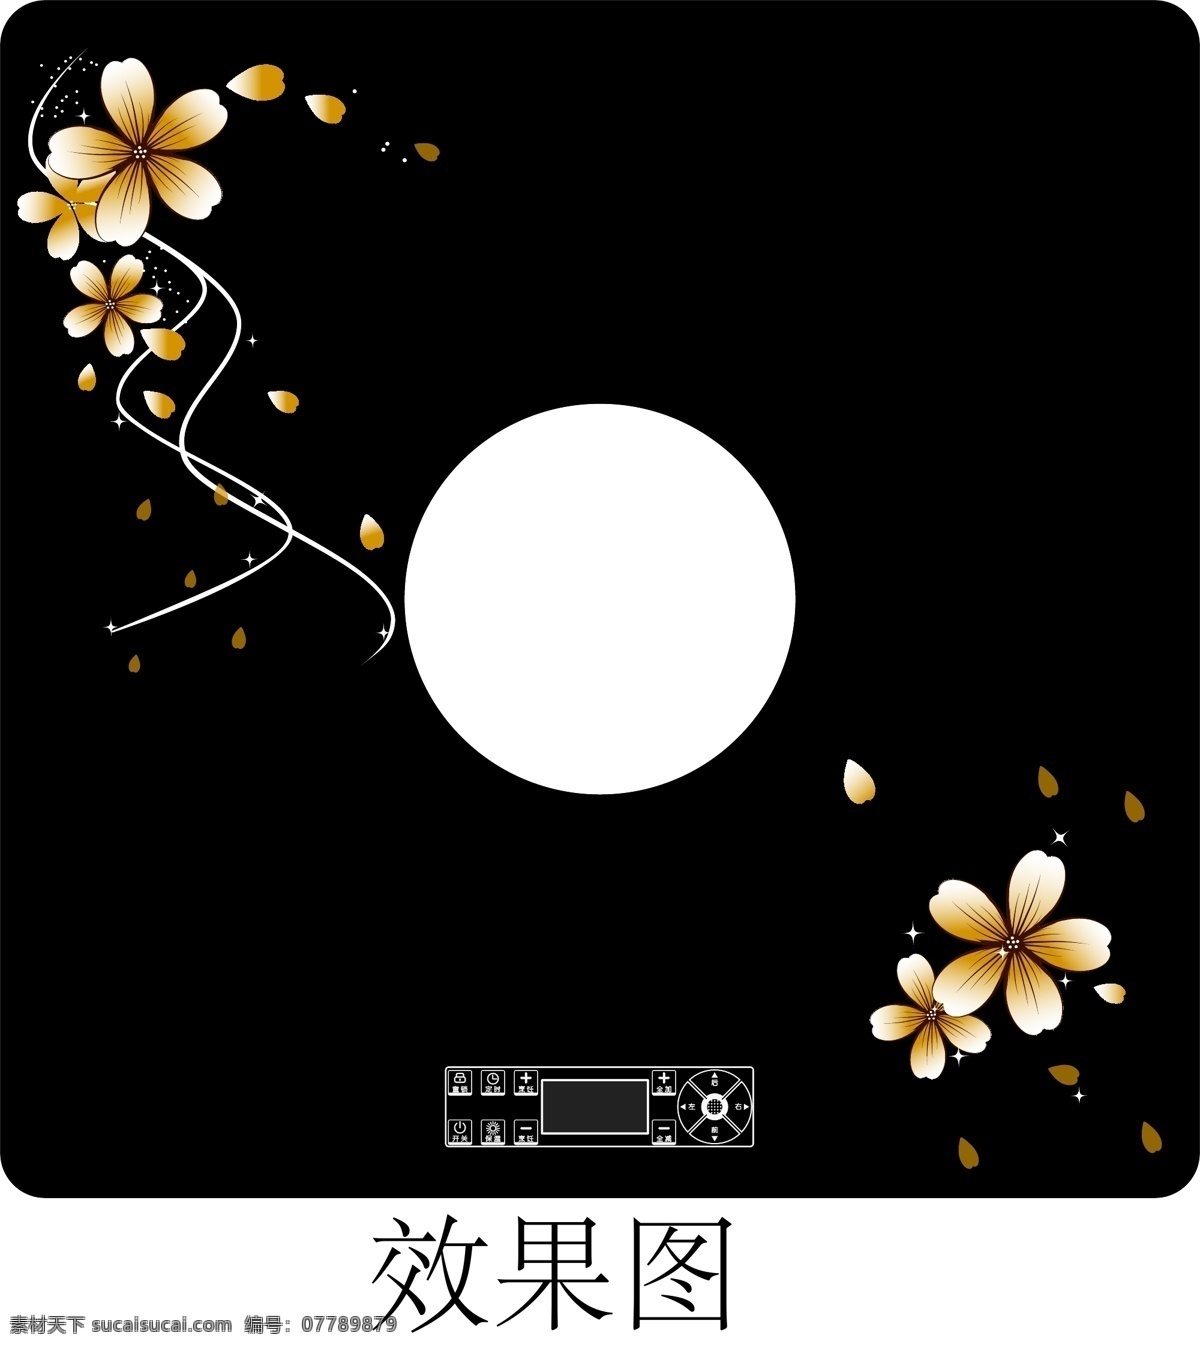 清新 花朵 火锅 台 玻璃 装饰 图案 中国风 田园 风格 家电 类 丝网印刷 矢量图 花纹花边